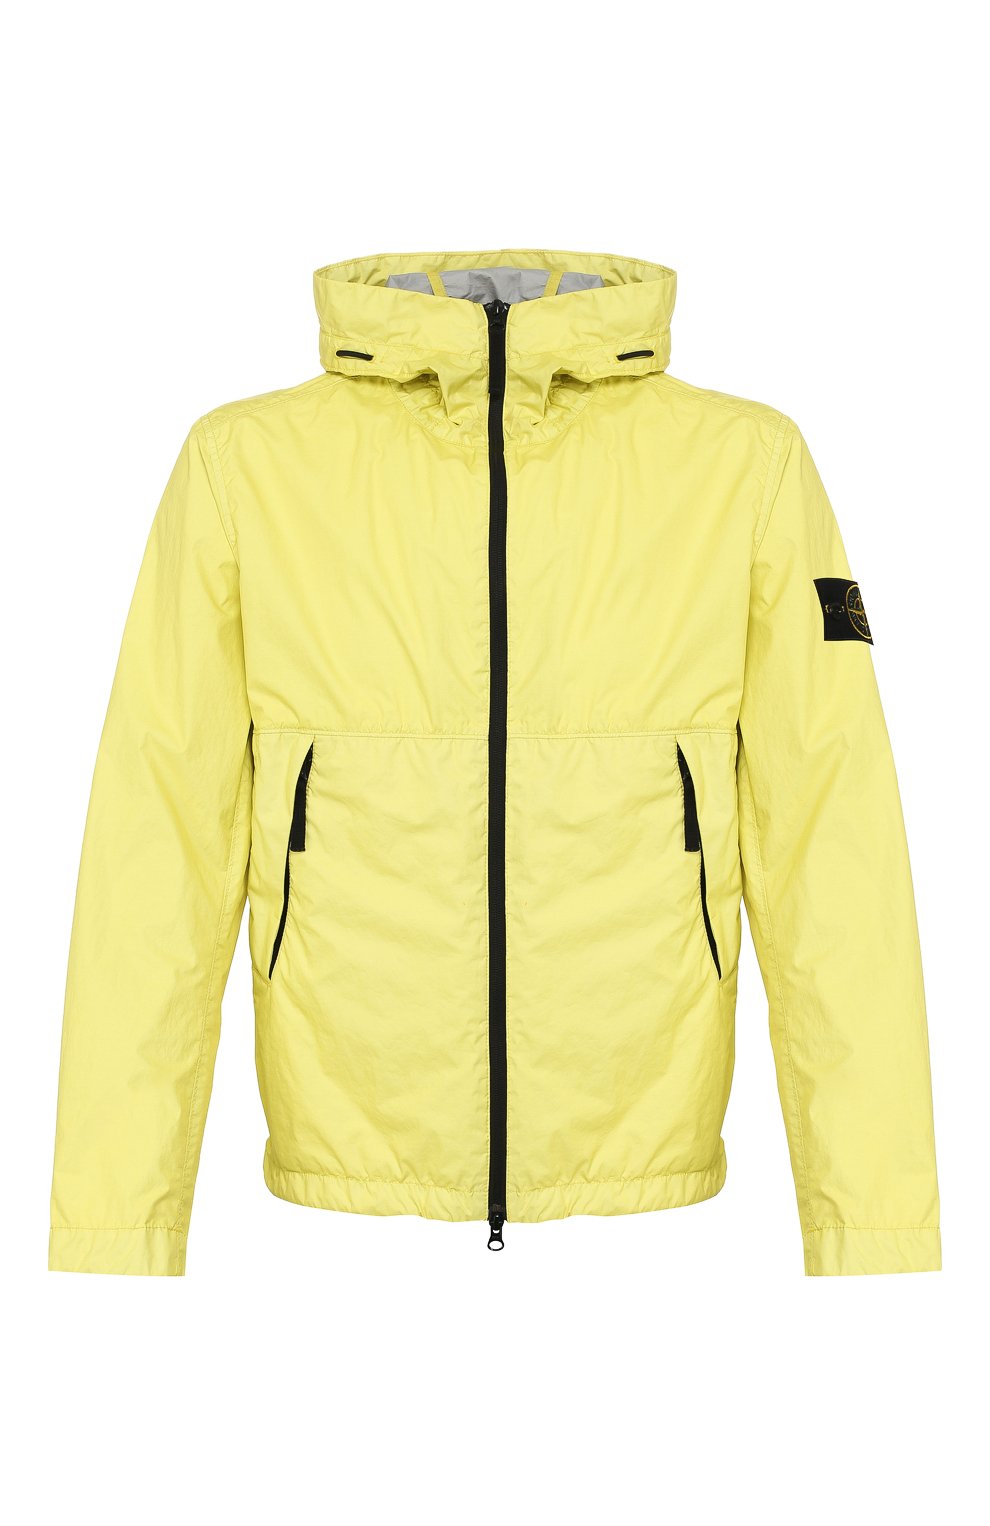 Мужская желтая куртка STONE ISLAND купить в интернет-магазине ЦУМ, арт.  721542423